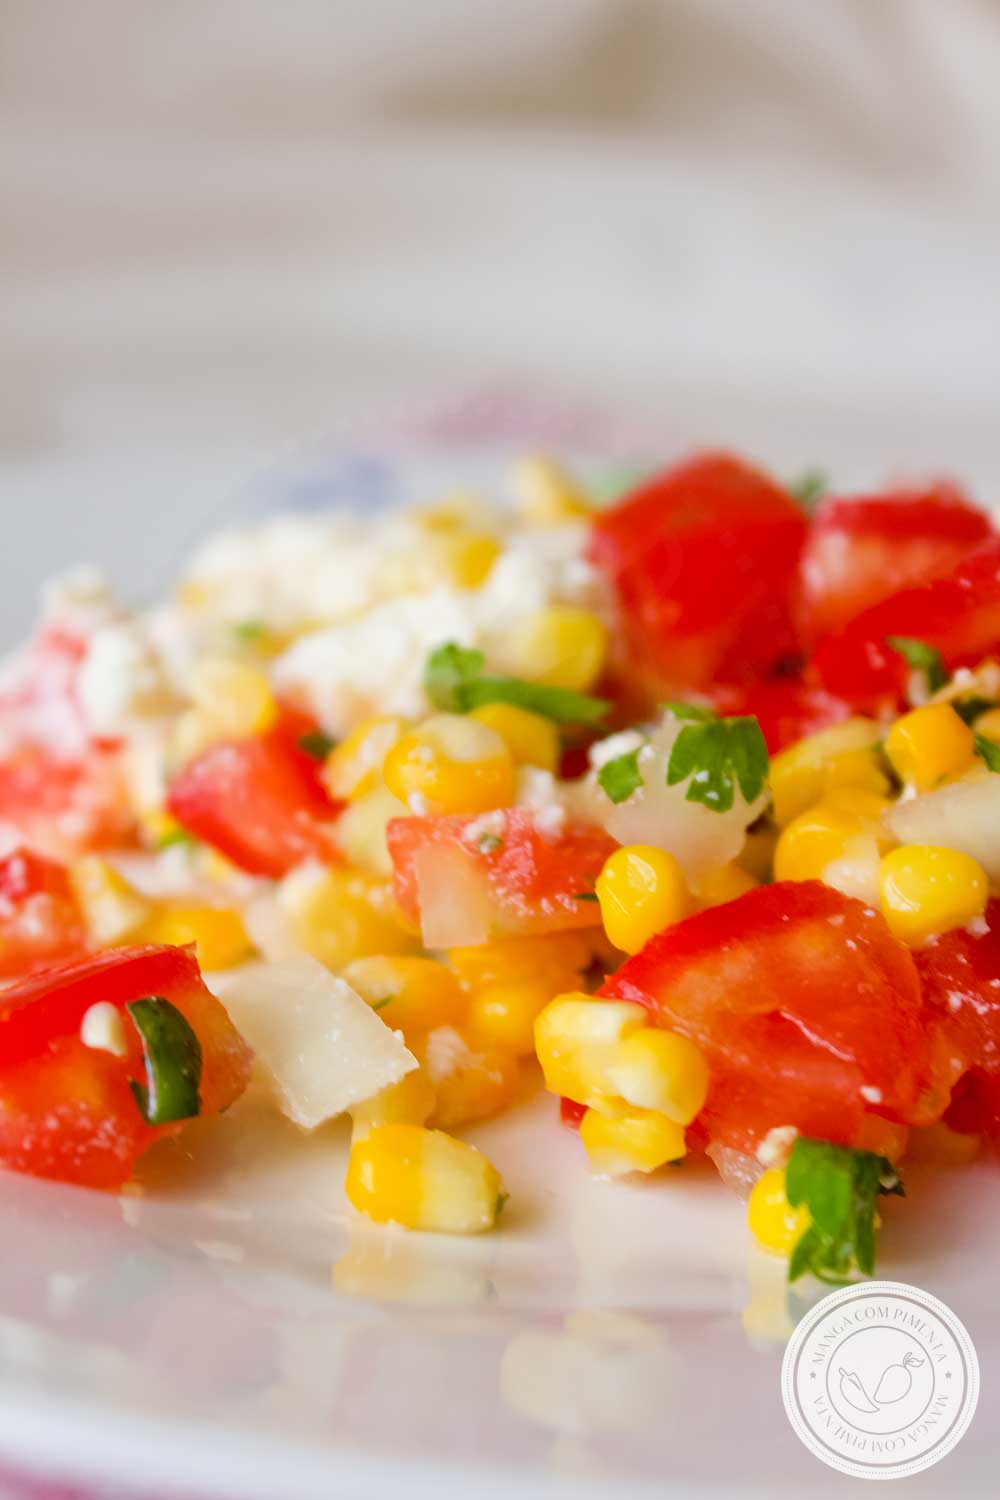 Receita de Salada de Milho com Tomate e Ricota - para o almoço em um dia quente de verão!